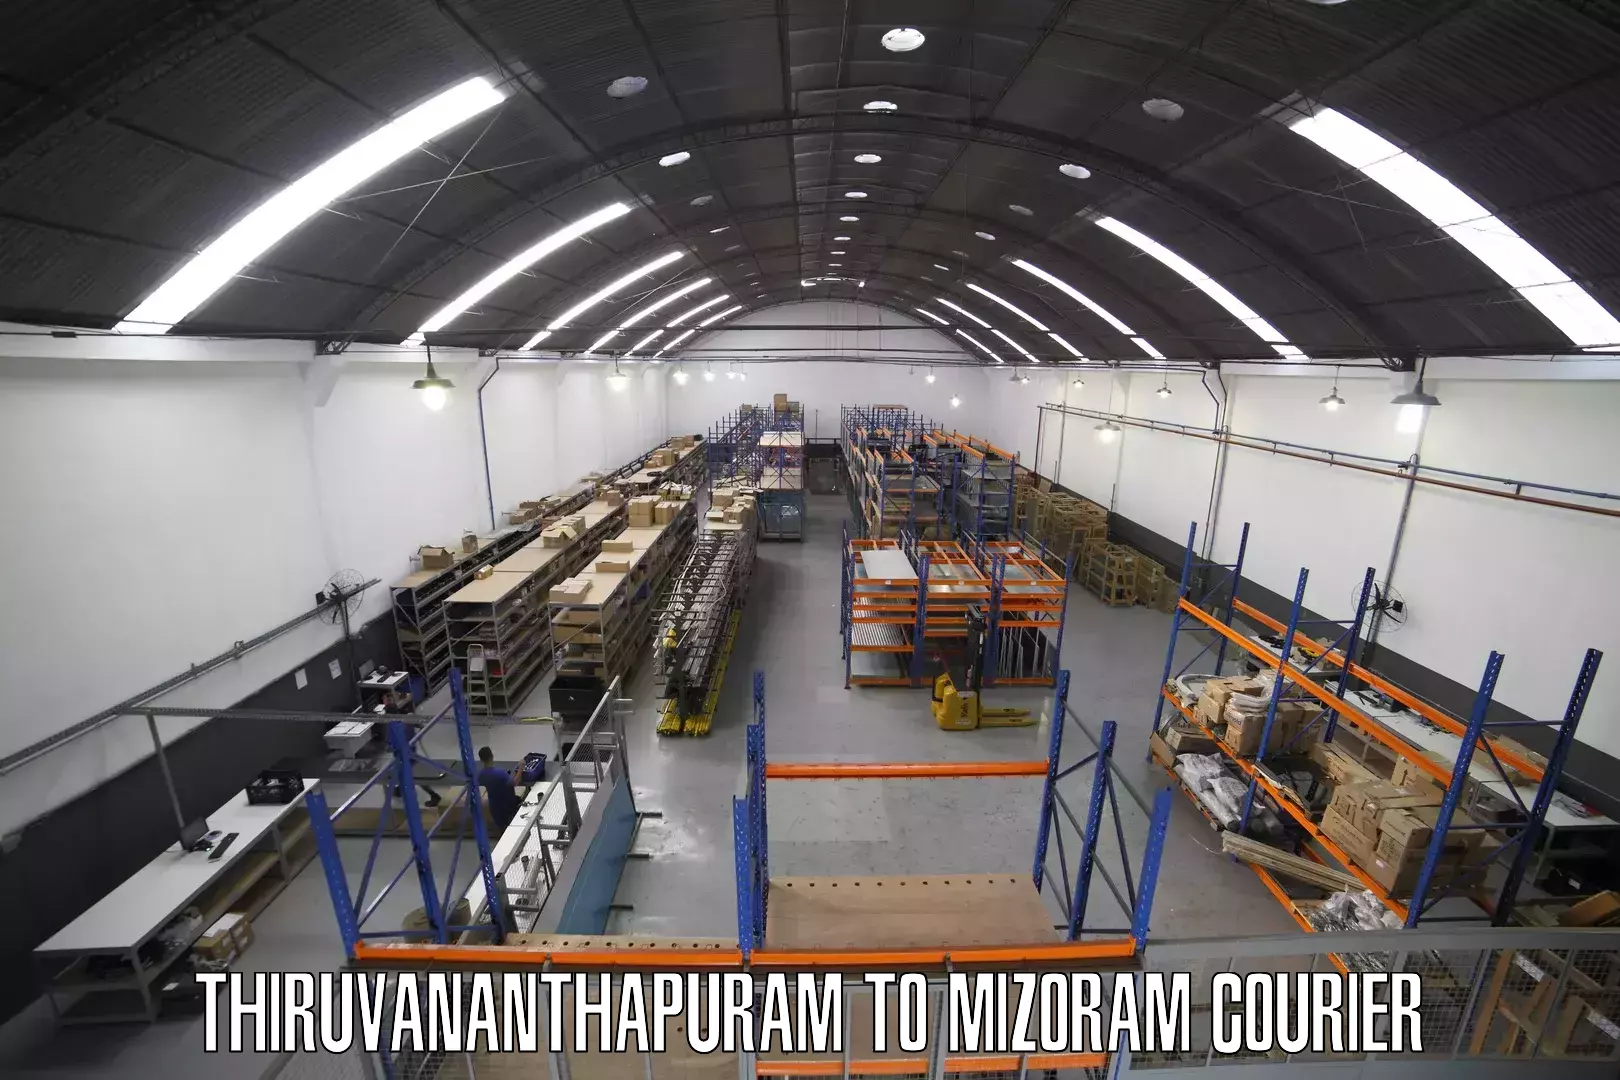 High-capacity parcel service Thiruvananthapuram to Aizawl